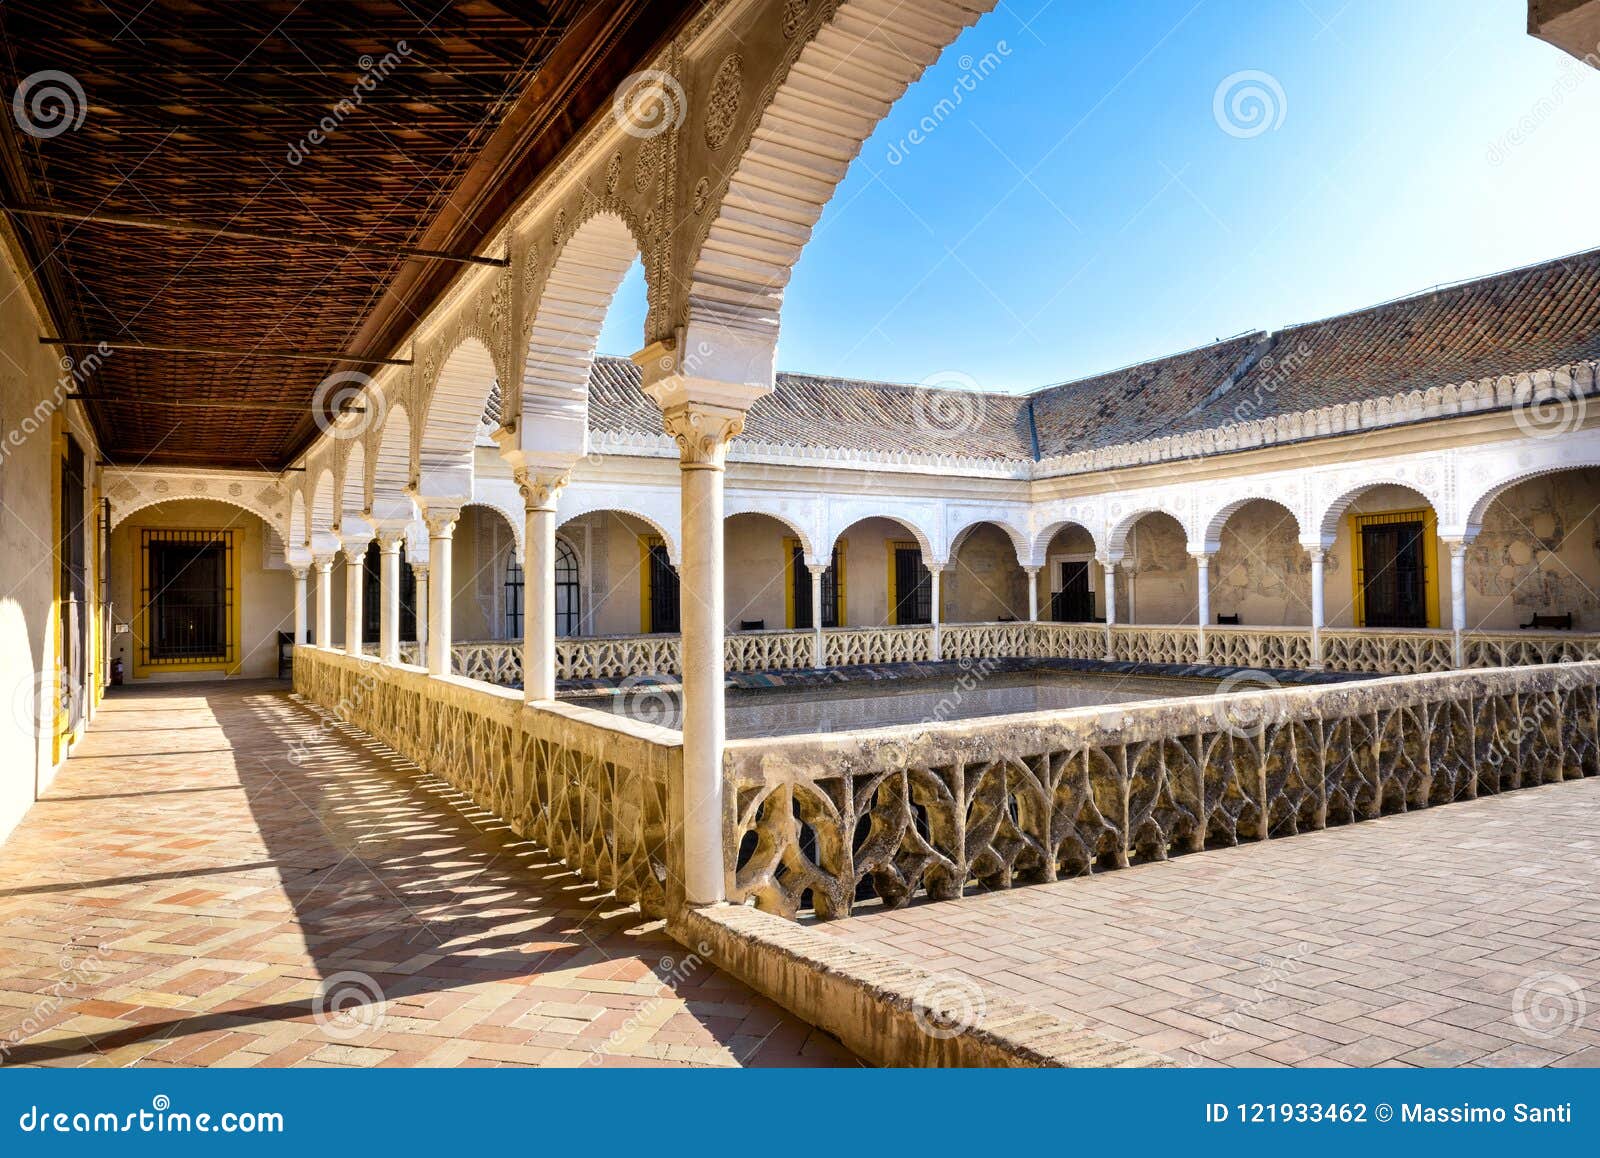 seville, patio principal of la casa de pilatos. the building is a precious palace in mudejar spanish style. spain